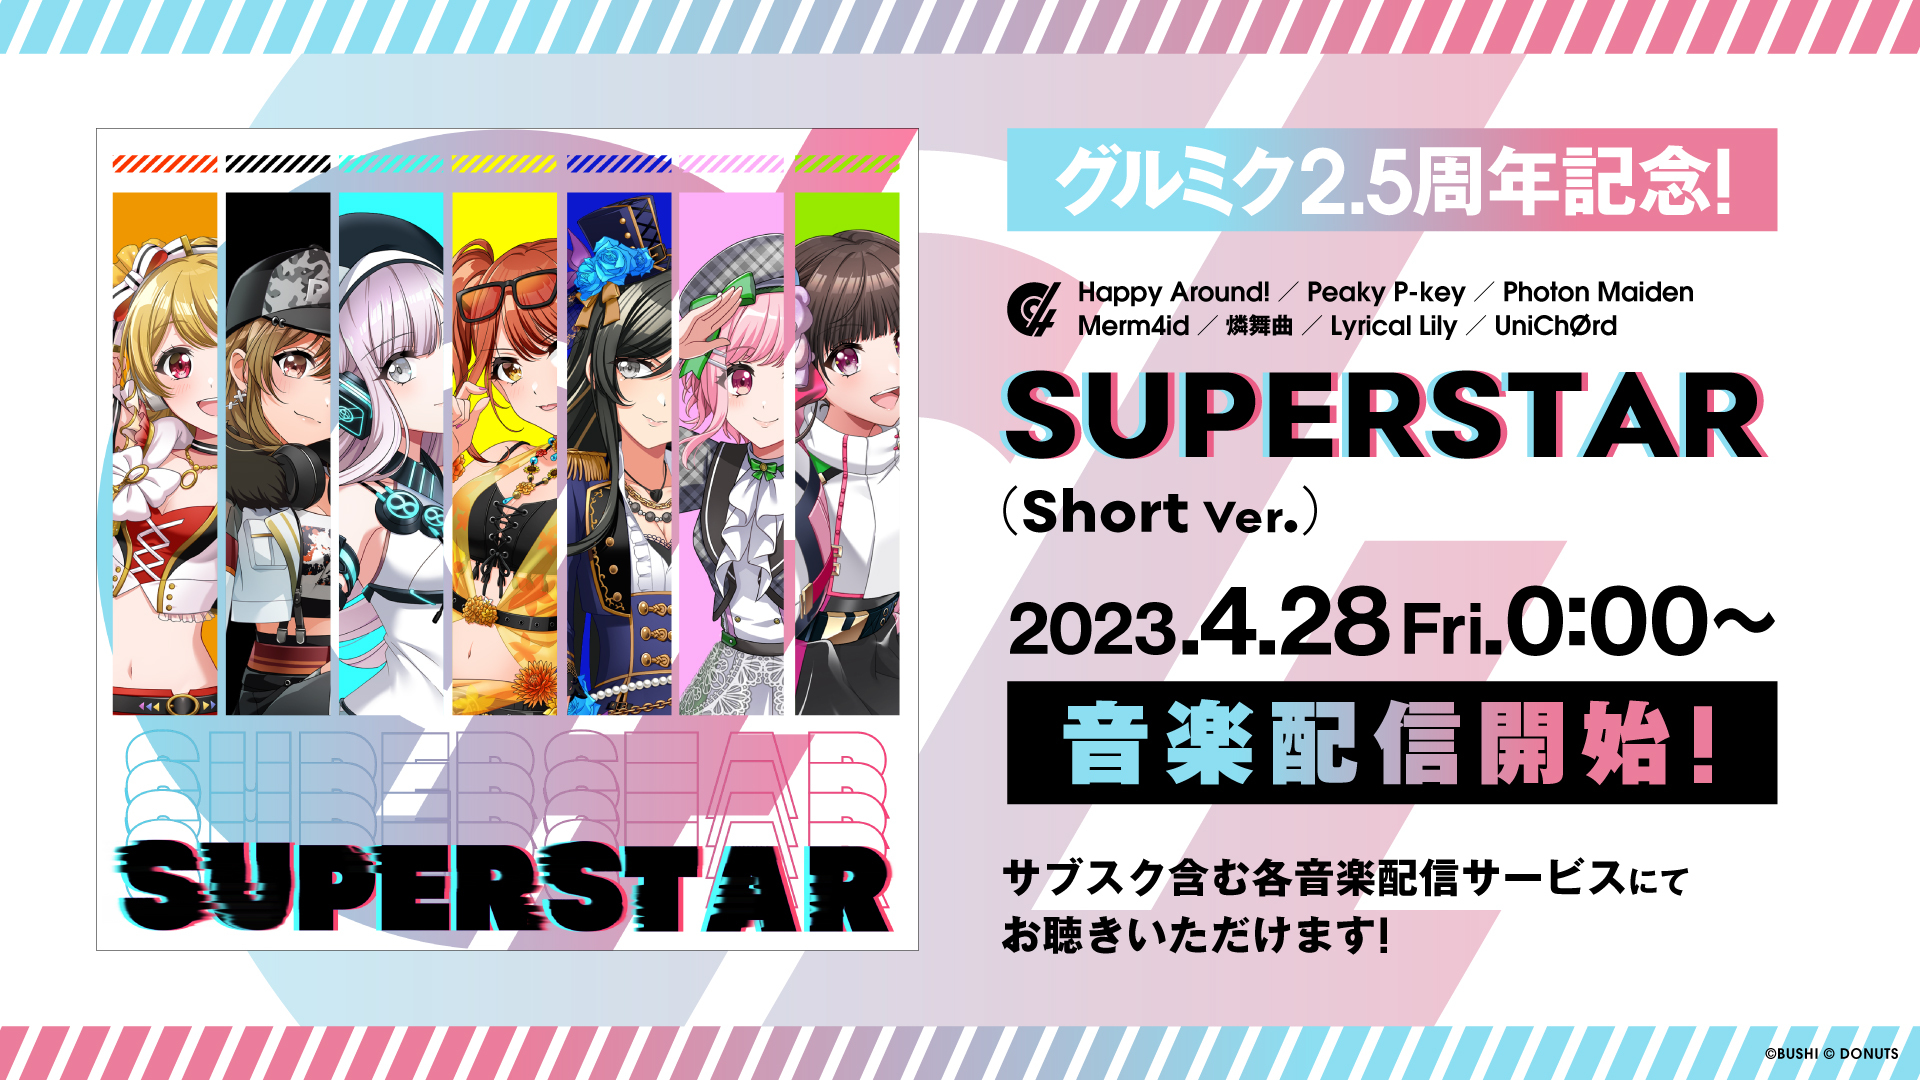 7ユニットが歌うスペシャル楽曲「SUPERSTAR (Short Ver.)」の音楽配信 